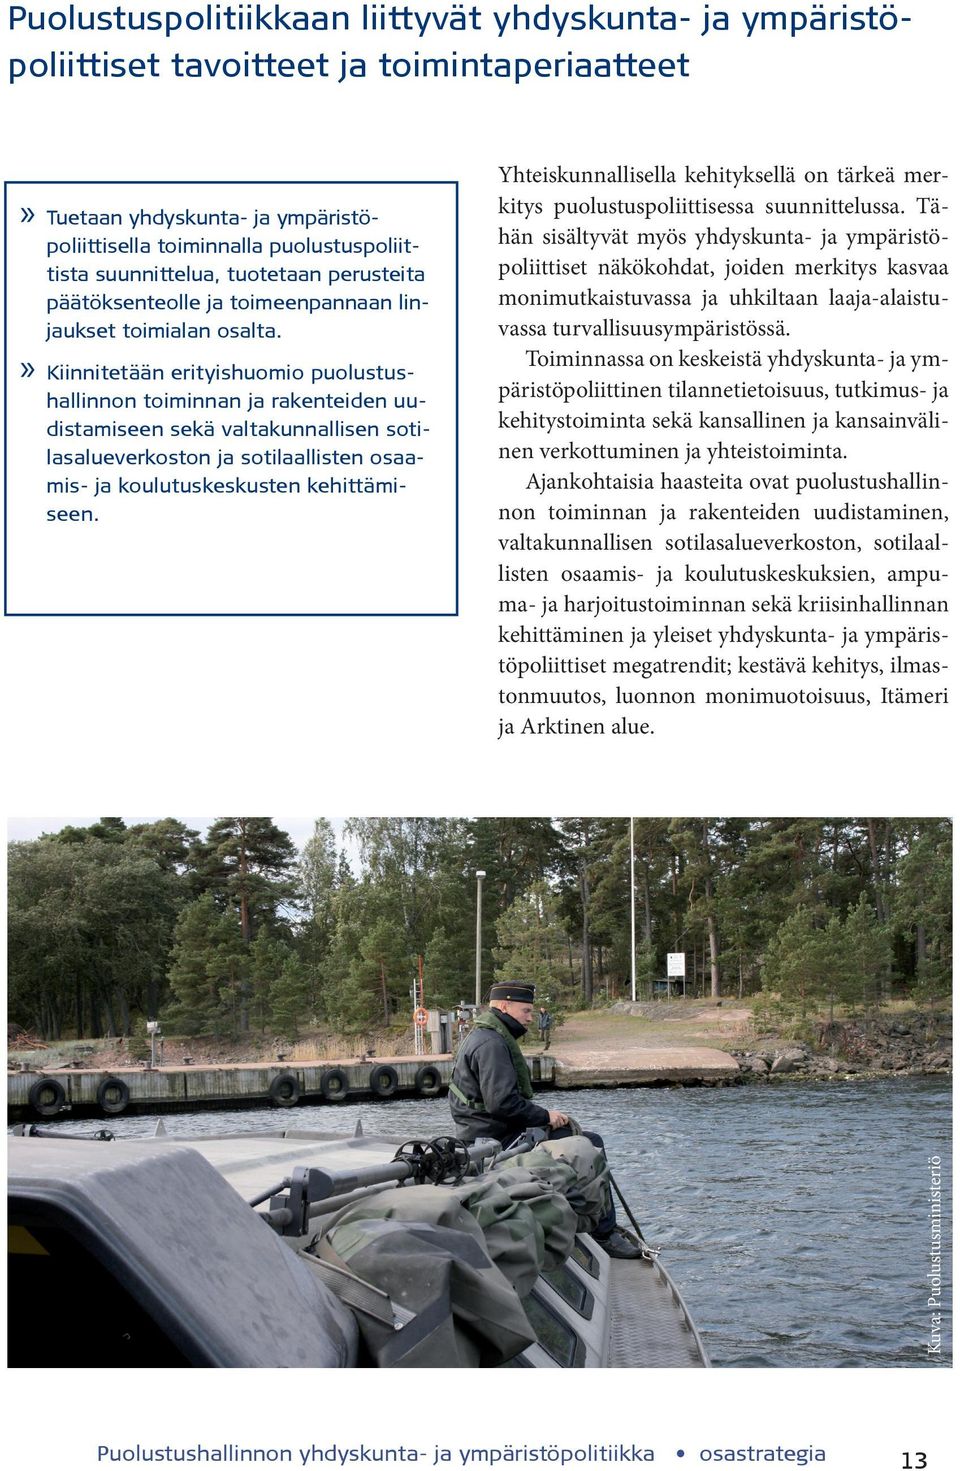 Kiinnitetään erityishuomio puolustus- Kuva: Puolustusministeriö hallinnon toiminnan ja rakenteiden uudistamiseen sekä valtakunnallisen sotilasalueverkoston ja sotilaallisten osaamis- ja